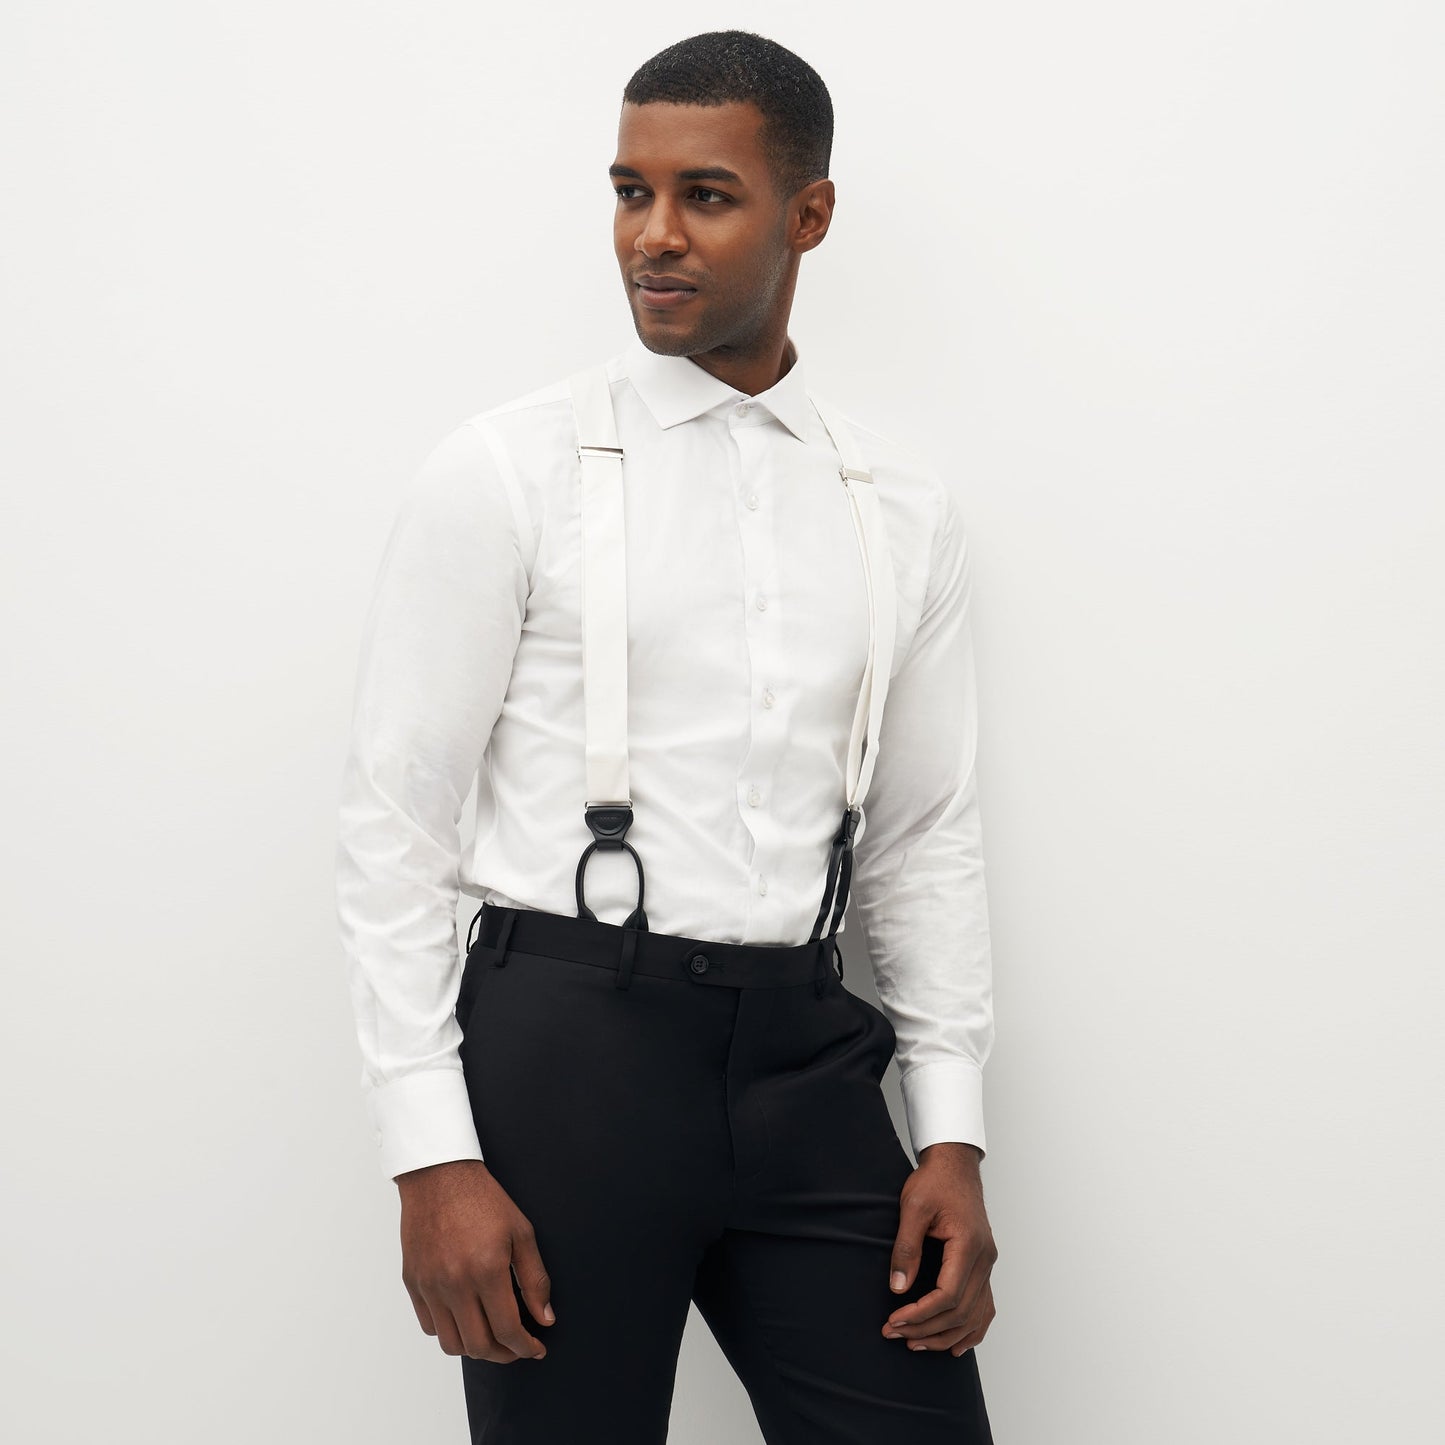 Grosgrain Solid White Suspenders by SuitShop